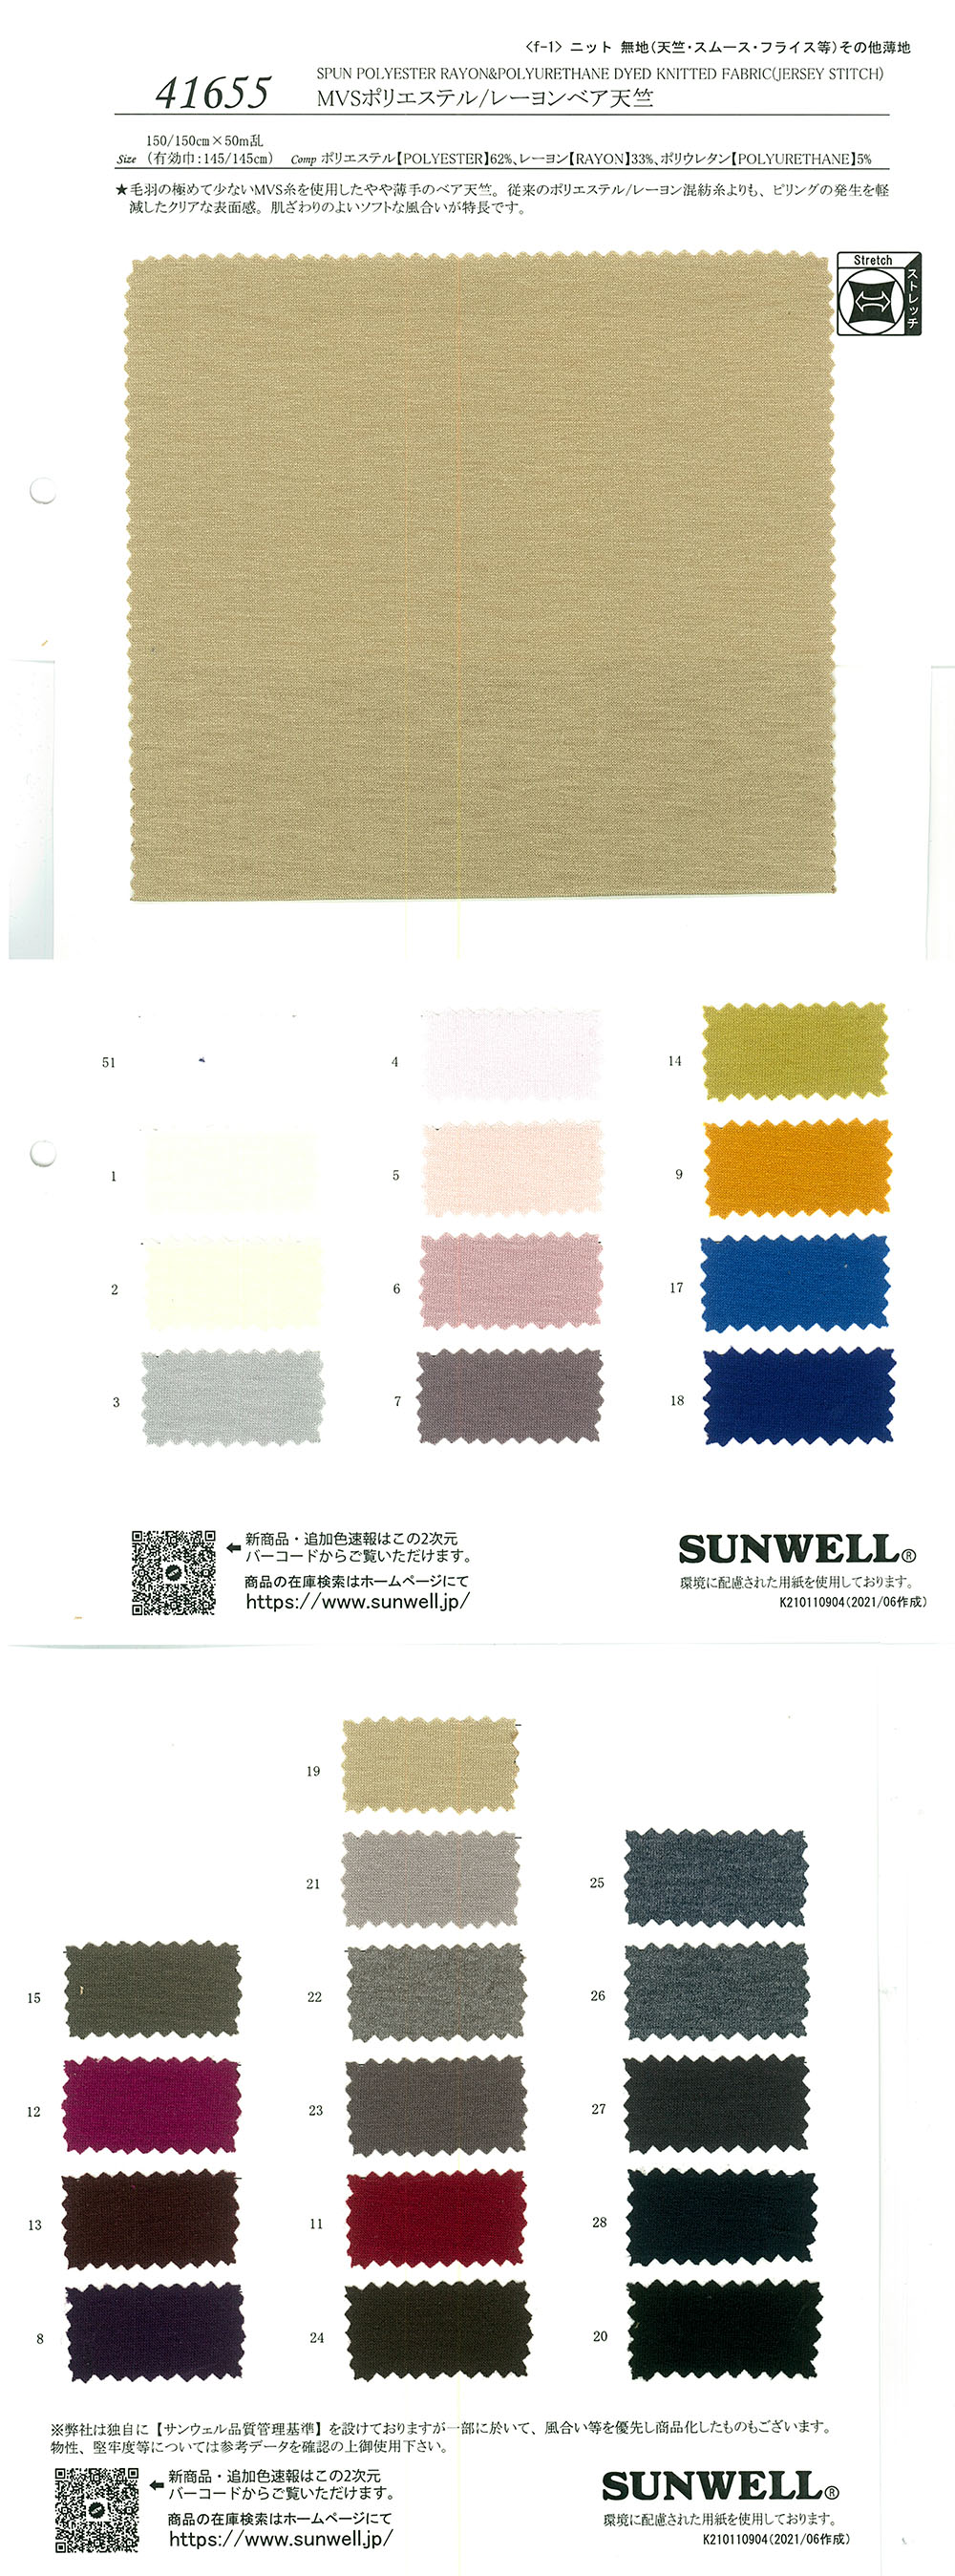 41655 MVS Polyester/Viskose Bare Tianzhu Cotton[Textilgewebe] SUNWELL